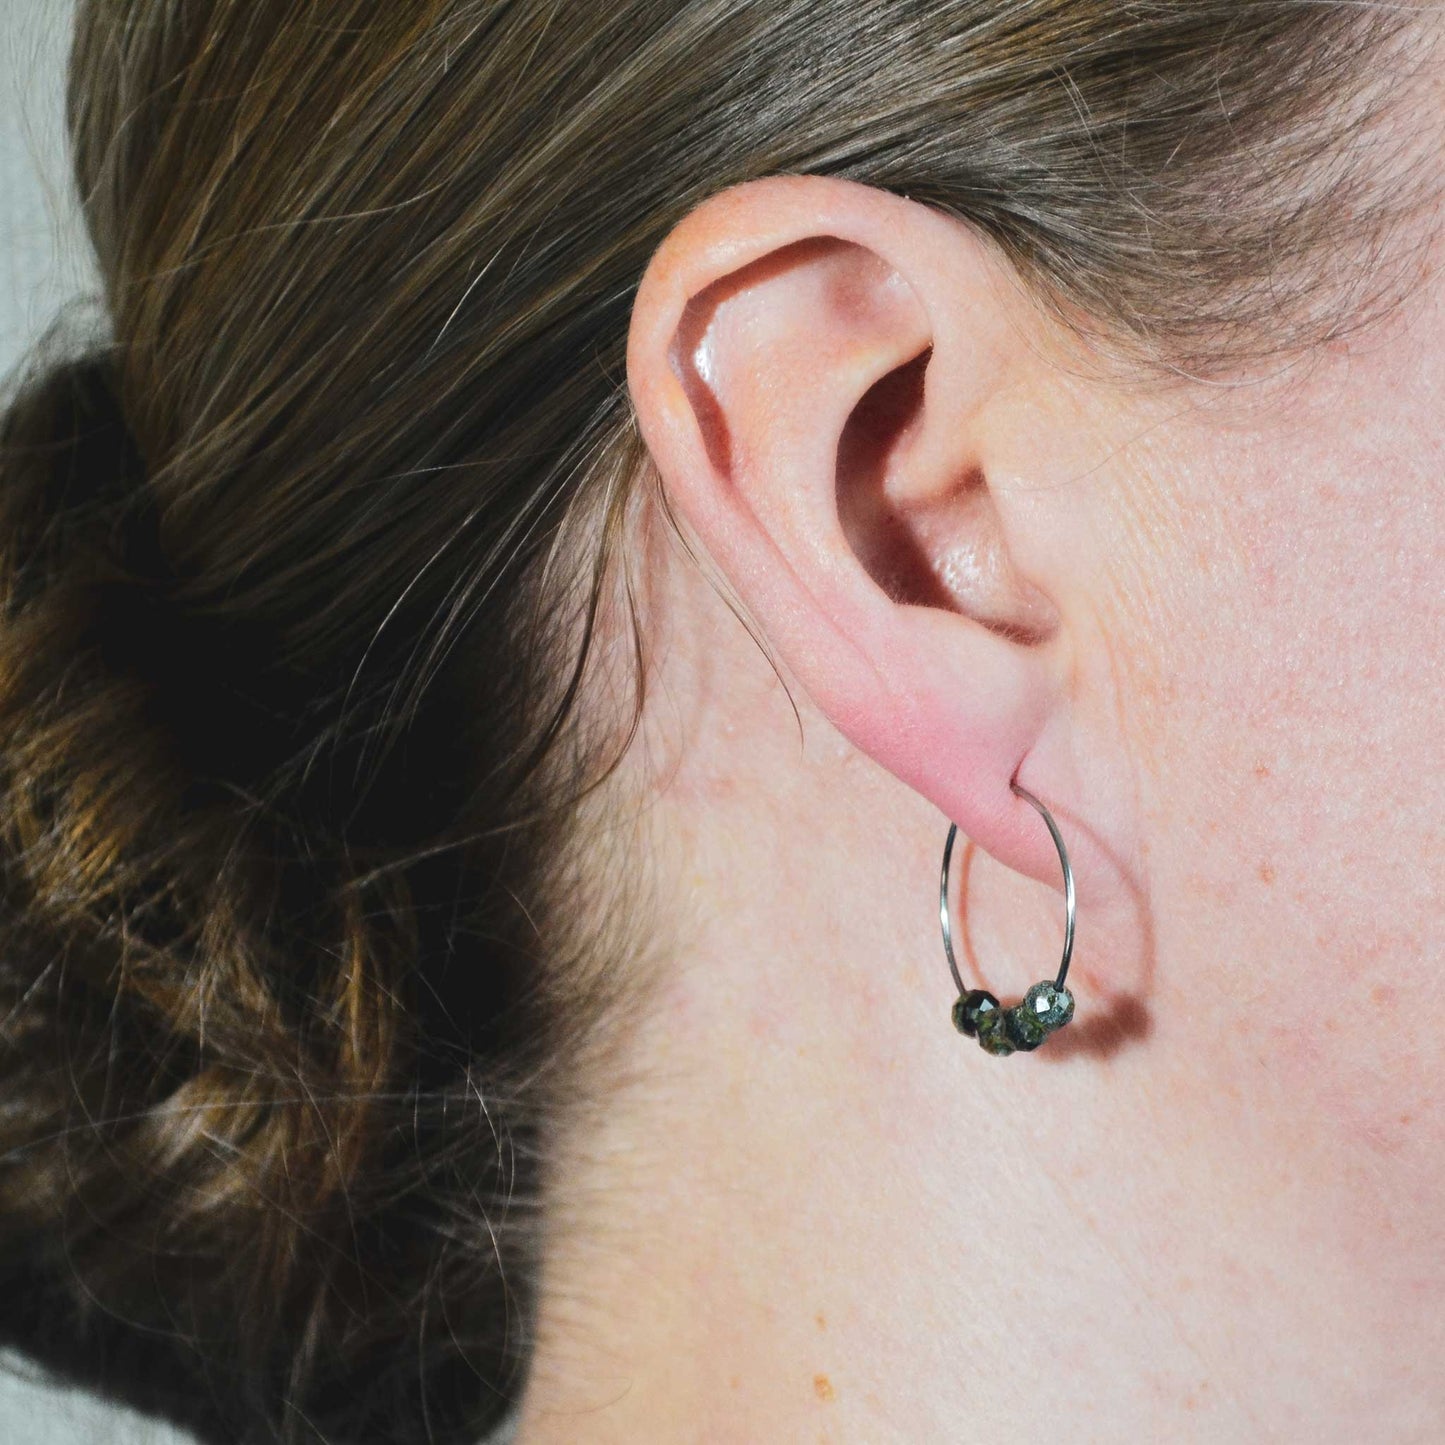 Woman wearing dark green hoop earrings in earlobe